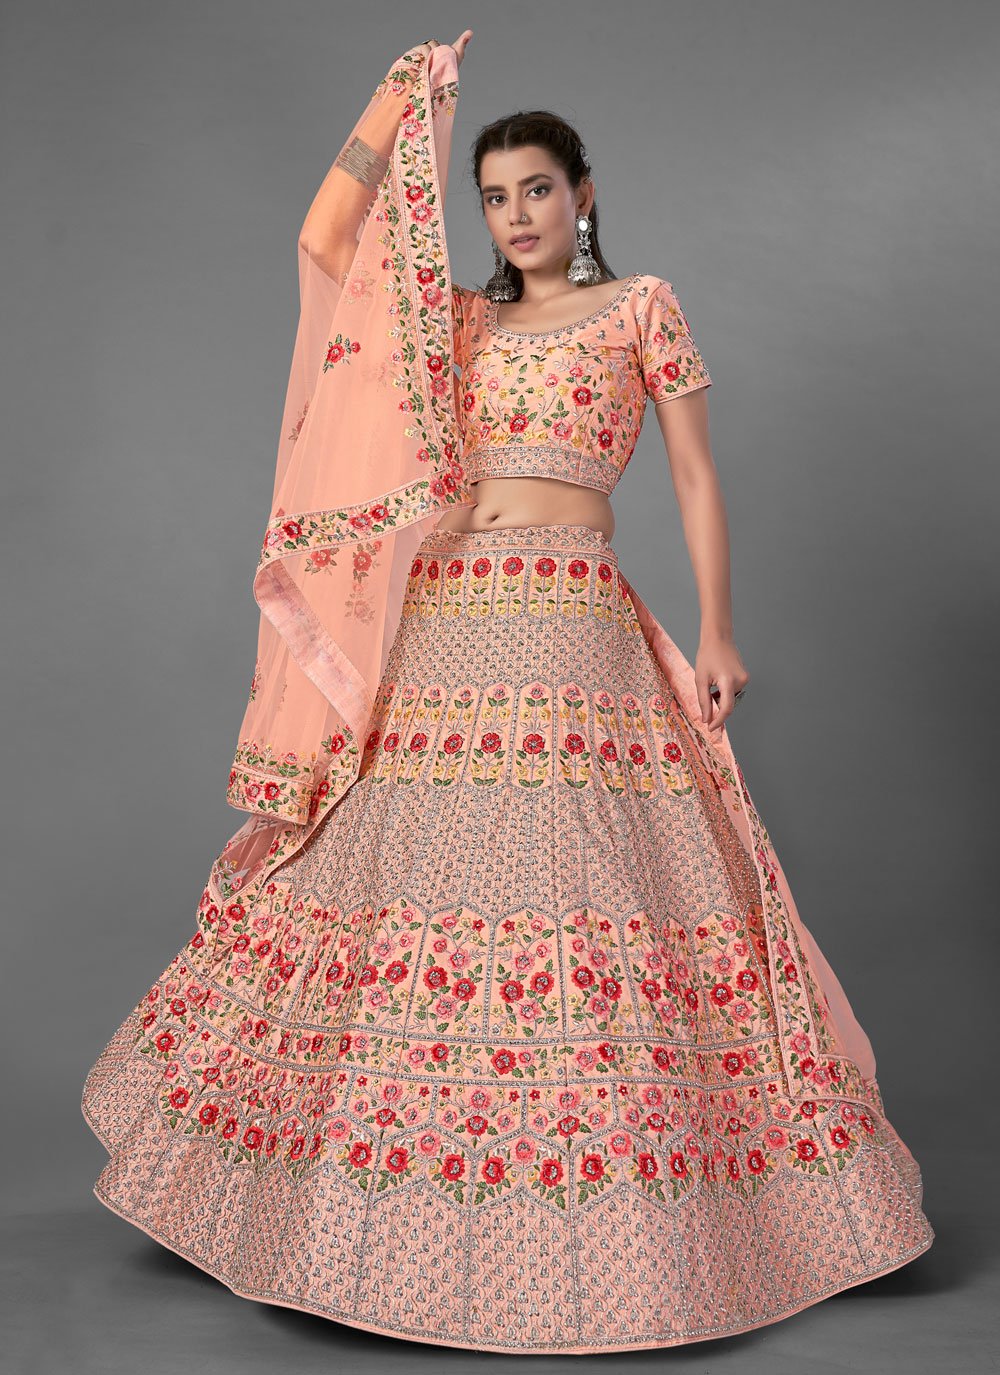 Pooja Hegde Bollywood Designer Orange Wedding Lehenga Choli | Fashion,  Indian fashion, Bollywood fashion